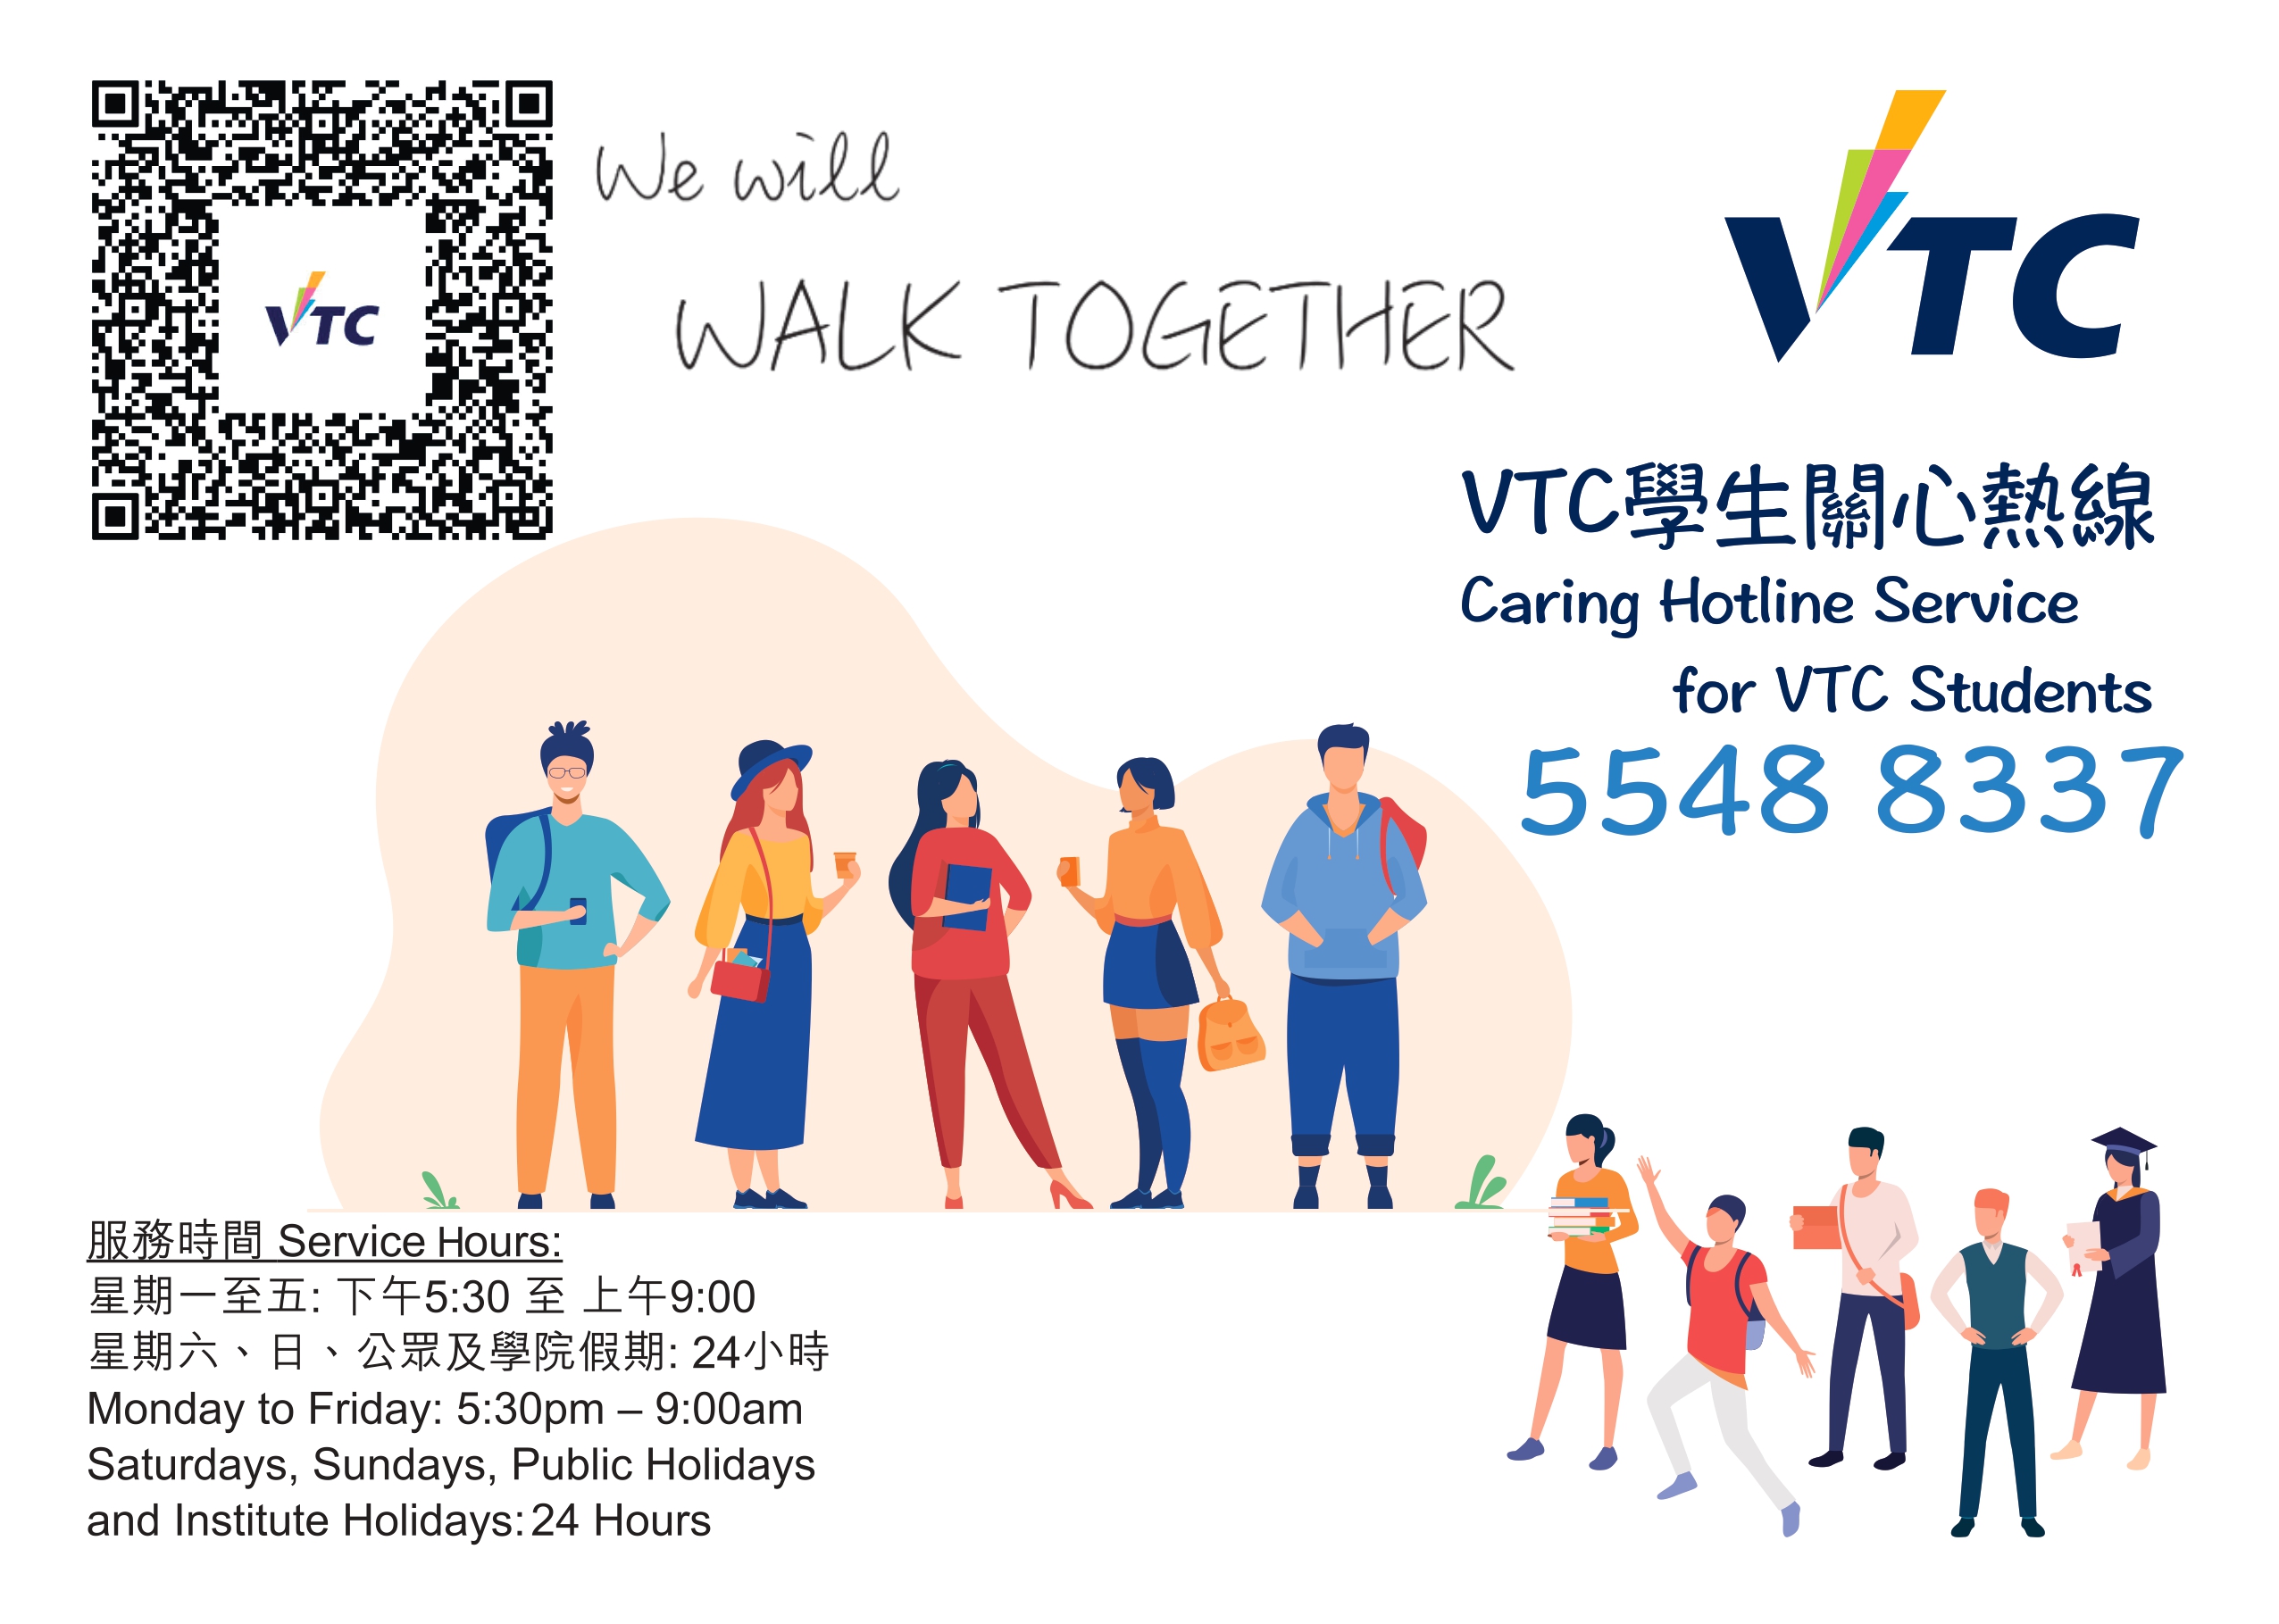 VTC hotline